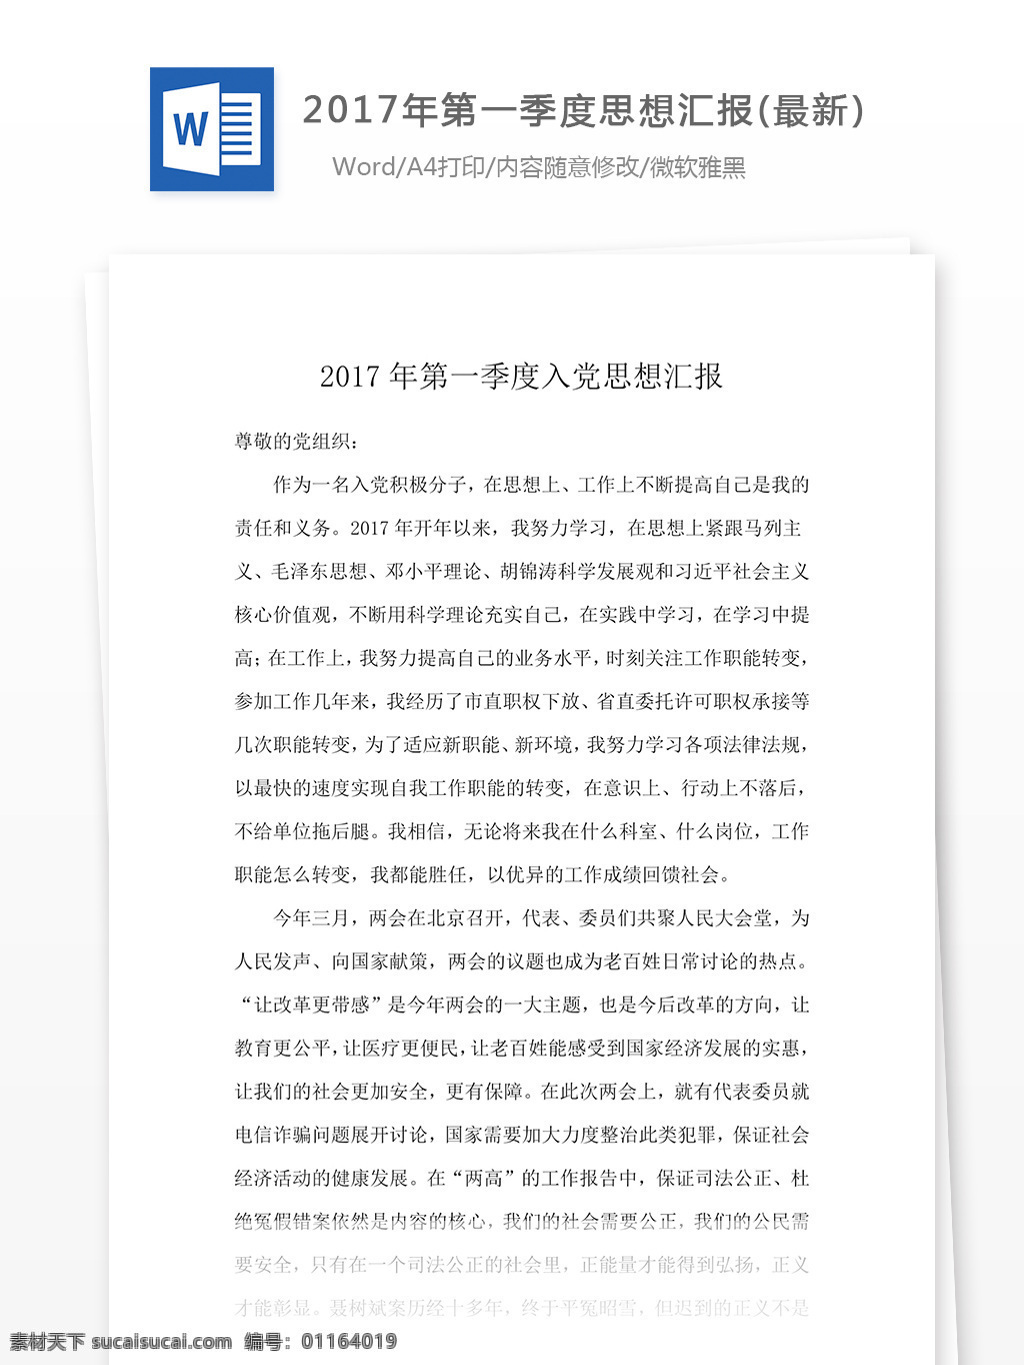 2017 年第 一季度 思想汇报 最新 党团工作 word word文档 文库模板 实用模板